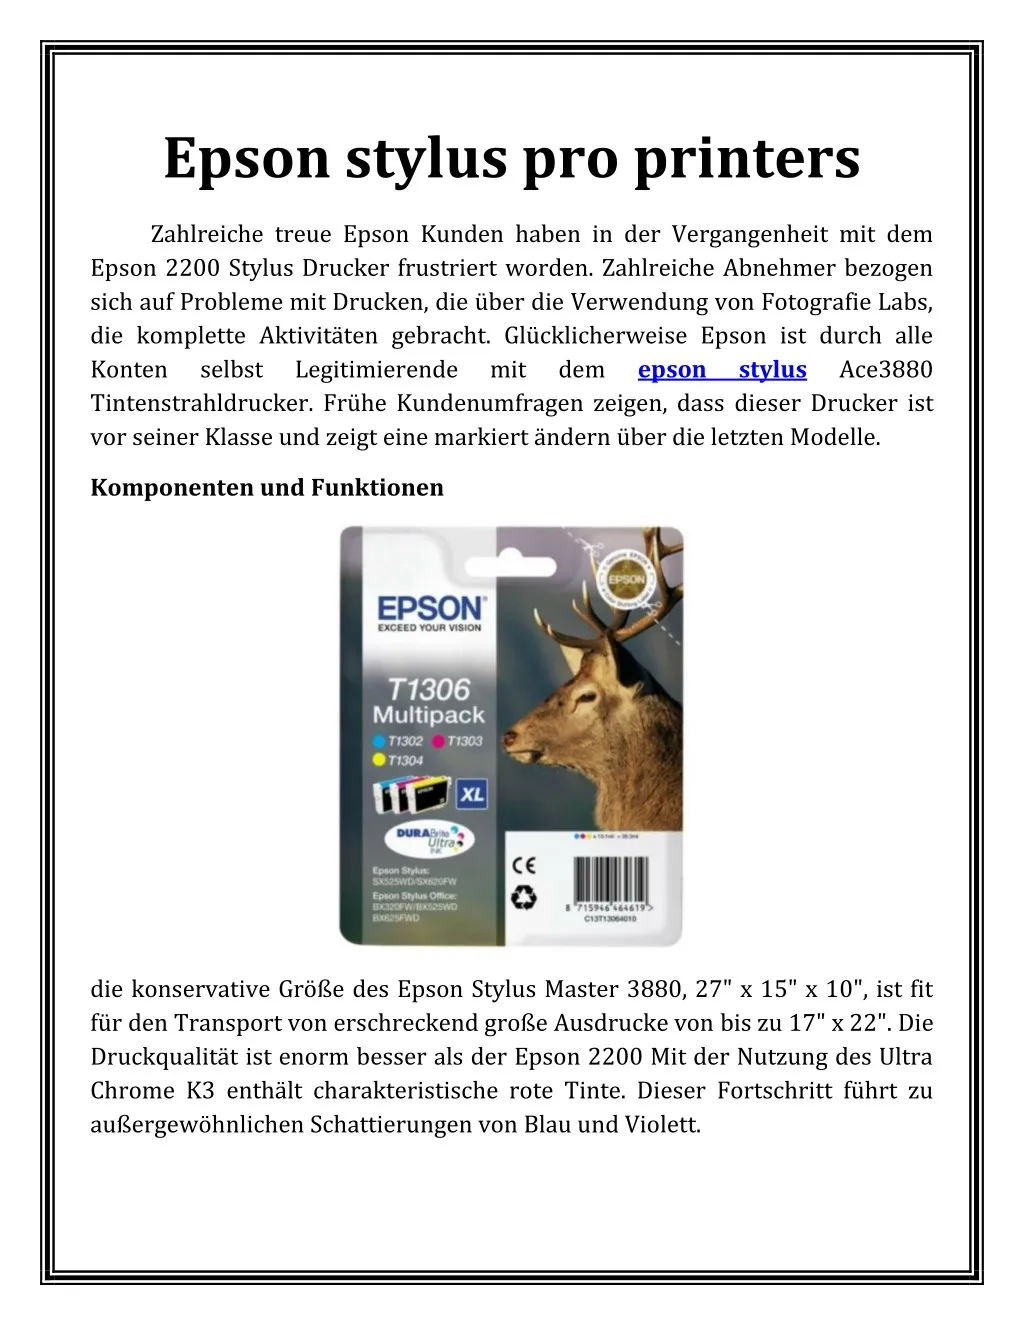 epson stylus pro printers